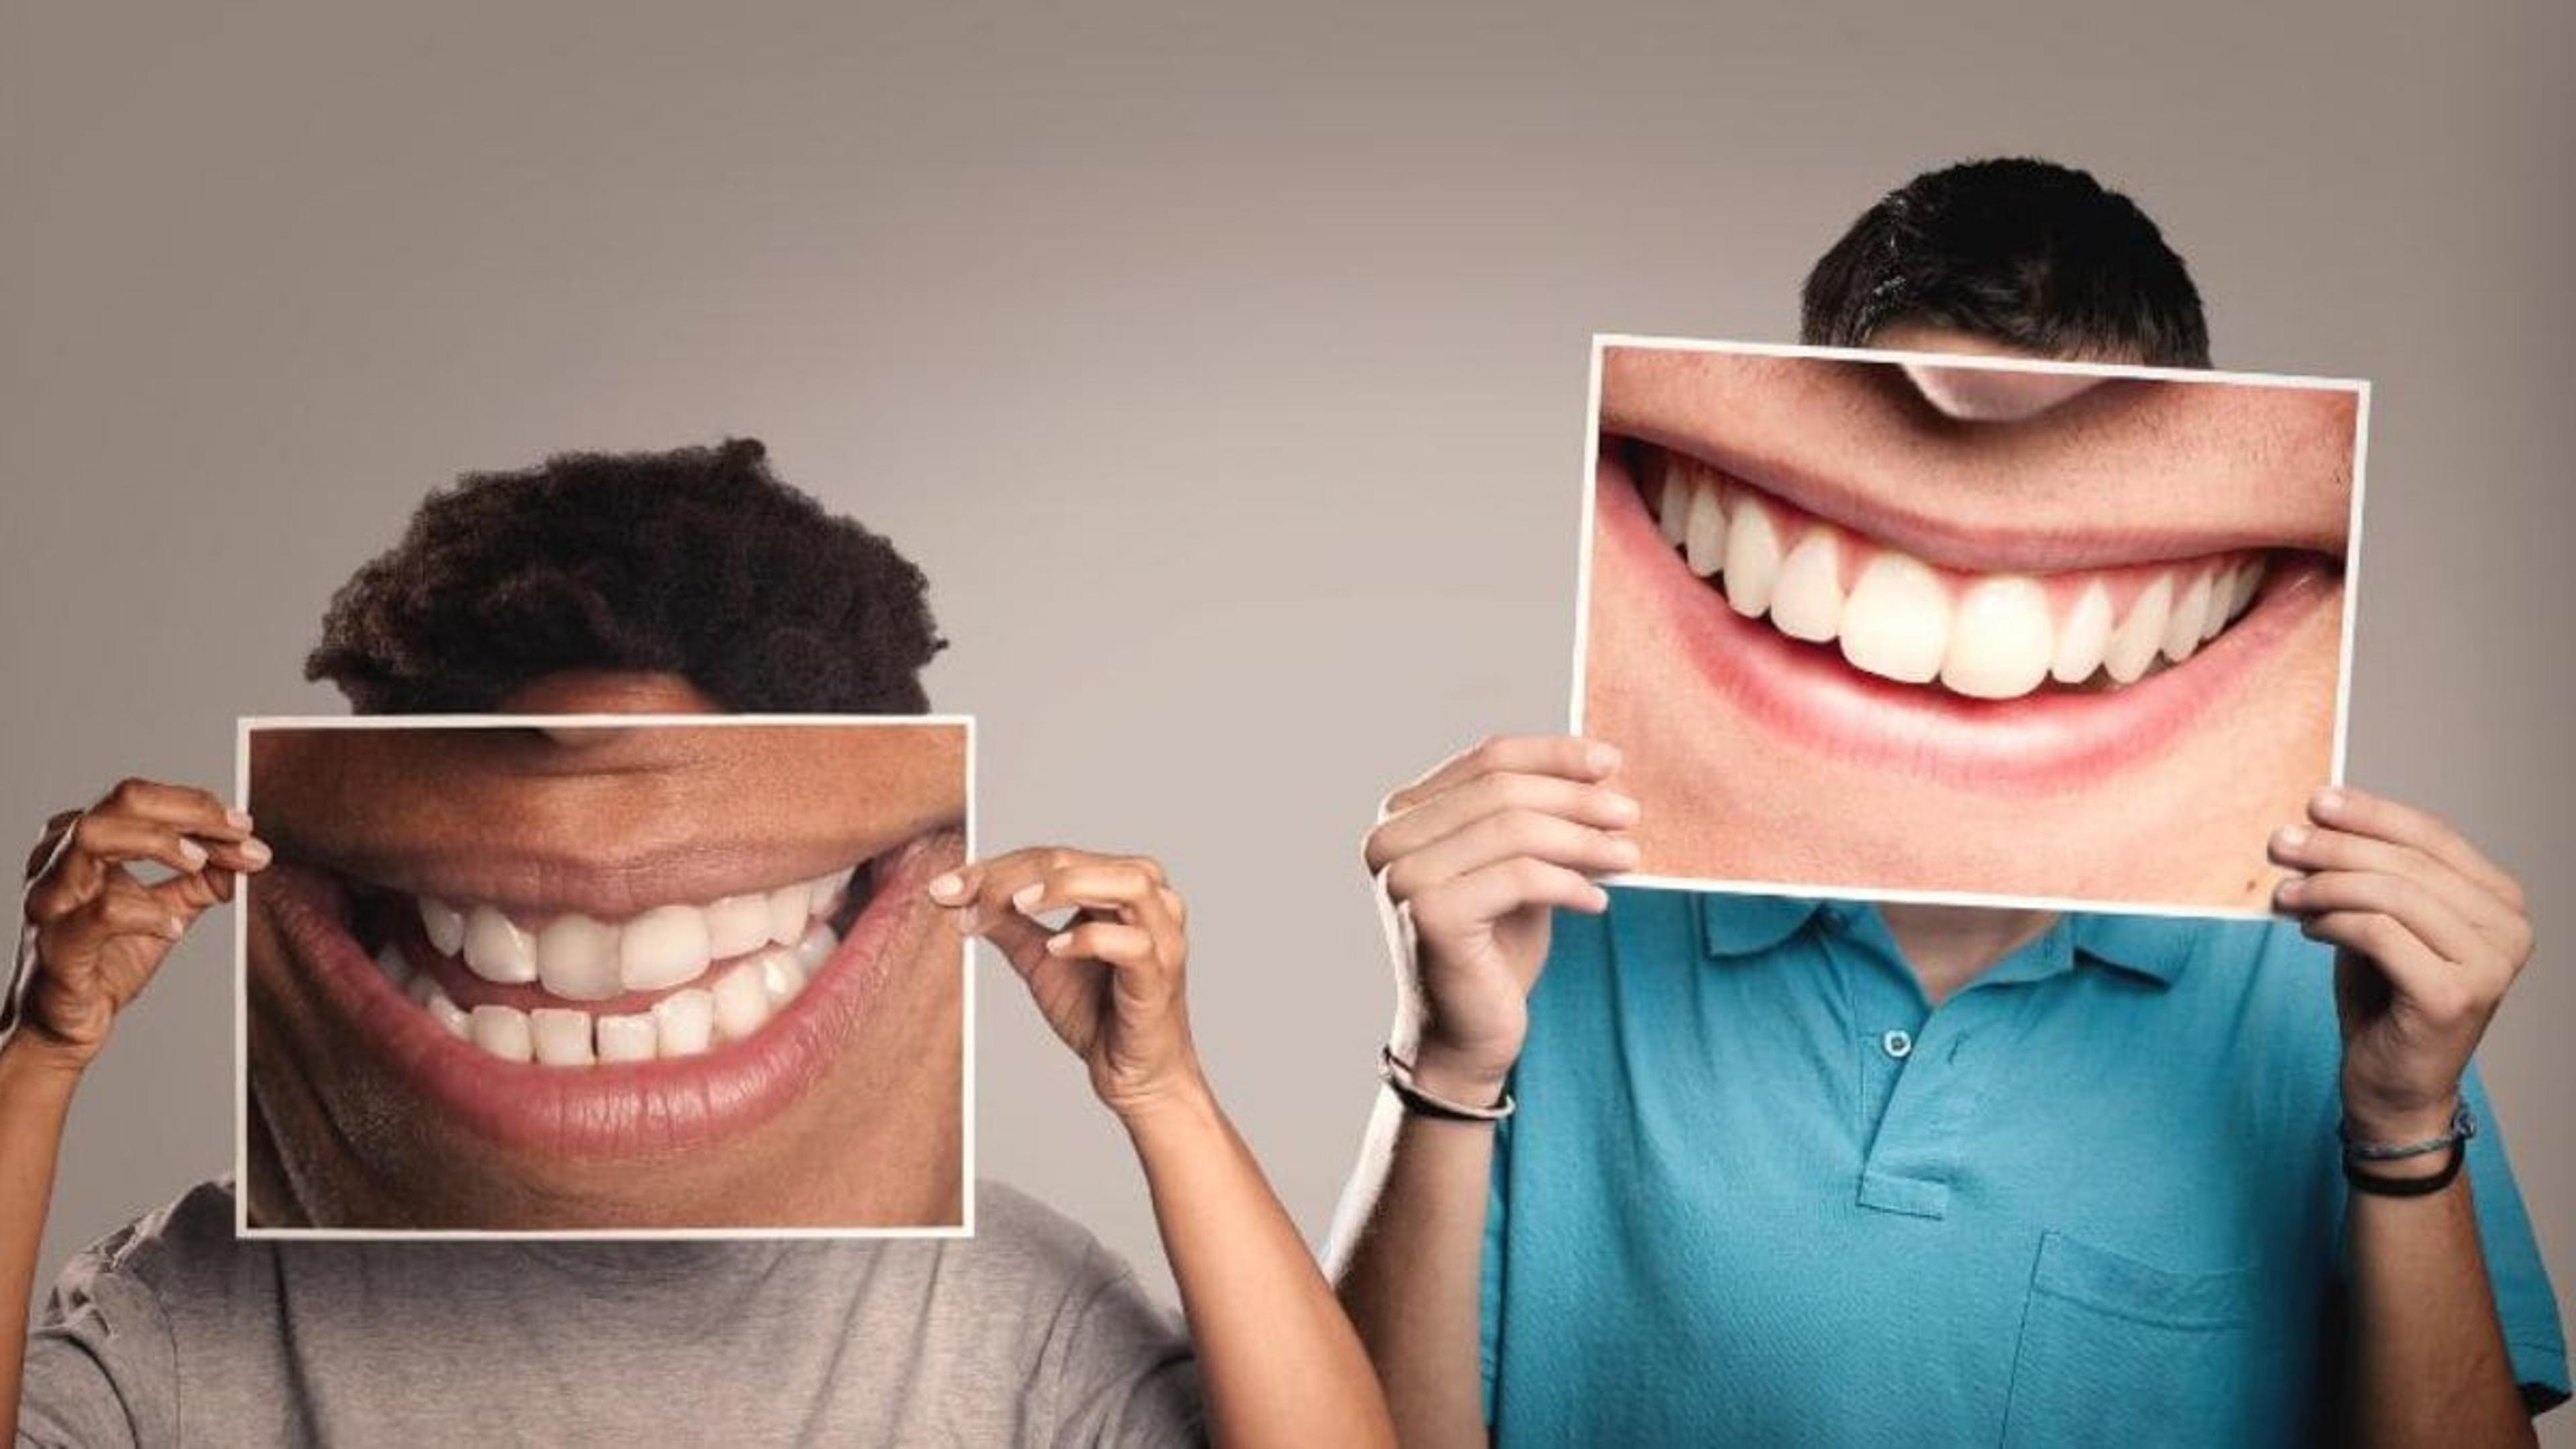 Laughter Therapy Benefits: चिंता, तनाव, गुस्सा और सिरदर्द में राहत देती ये थैरेपी, जानिए और फायदे